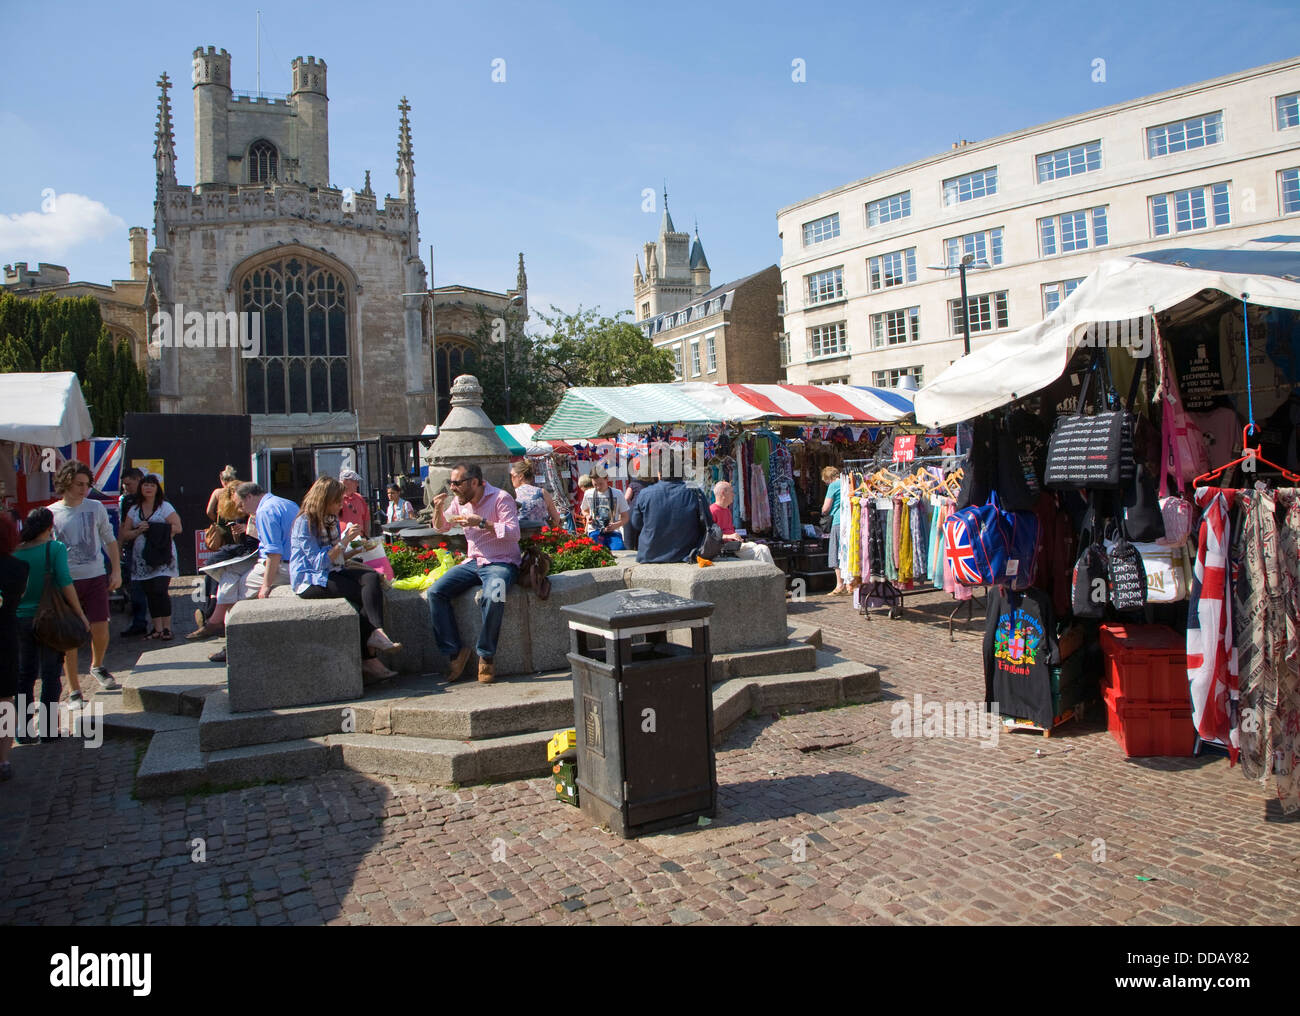 Les étals du marché place du marché historique Cambridge en Angleterre Banque D'Images